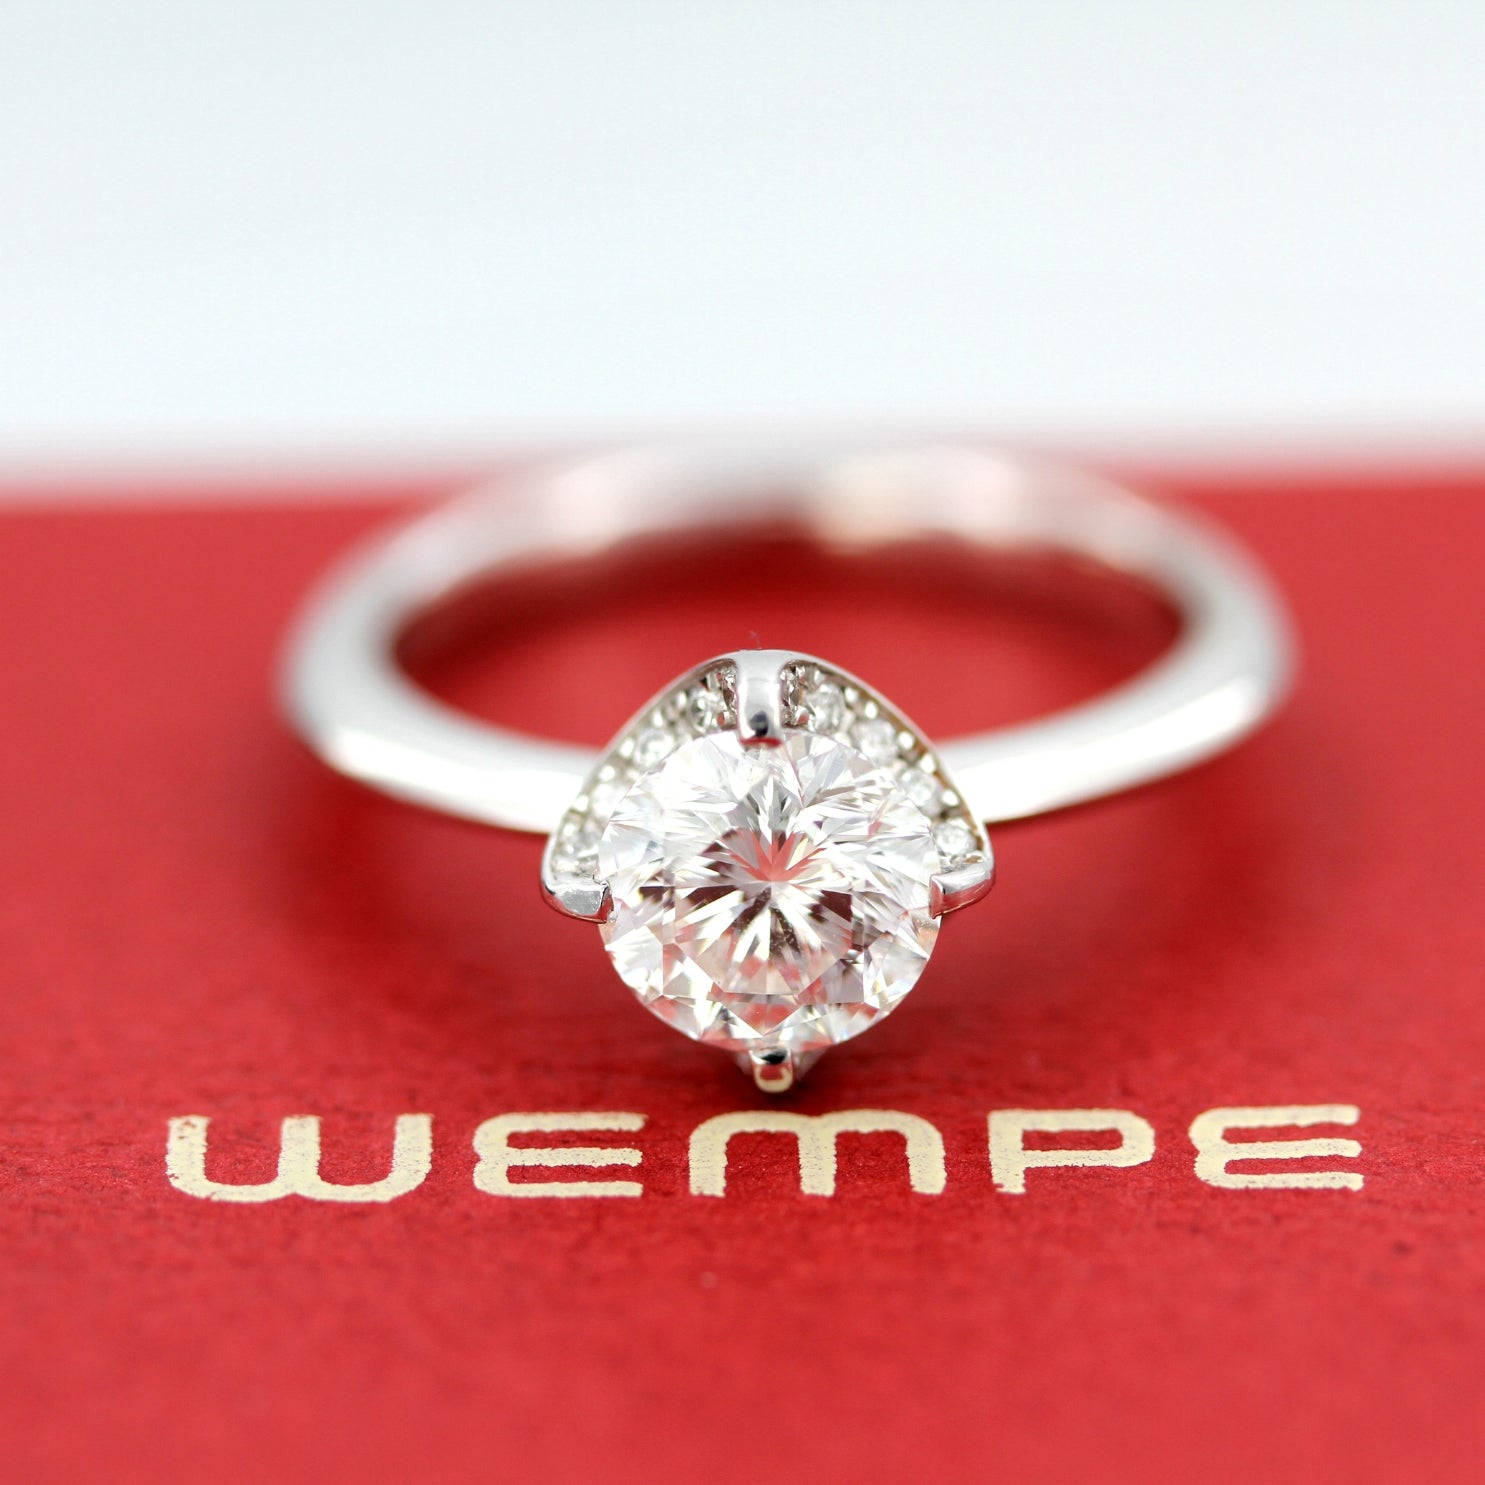 Wempe BY KIM, Ring Splendora, 18kt Weißgold, 1 Diamant WEMPE Cut 1.50ct, 20 Brillanten 0.15ct - LUXUHRIA